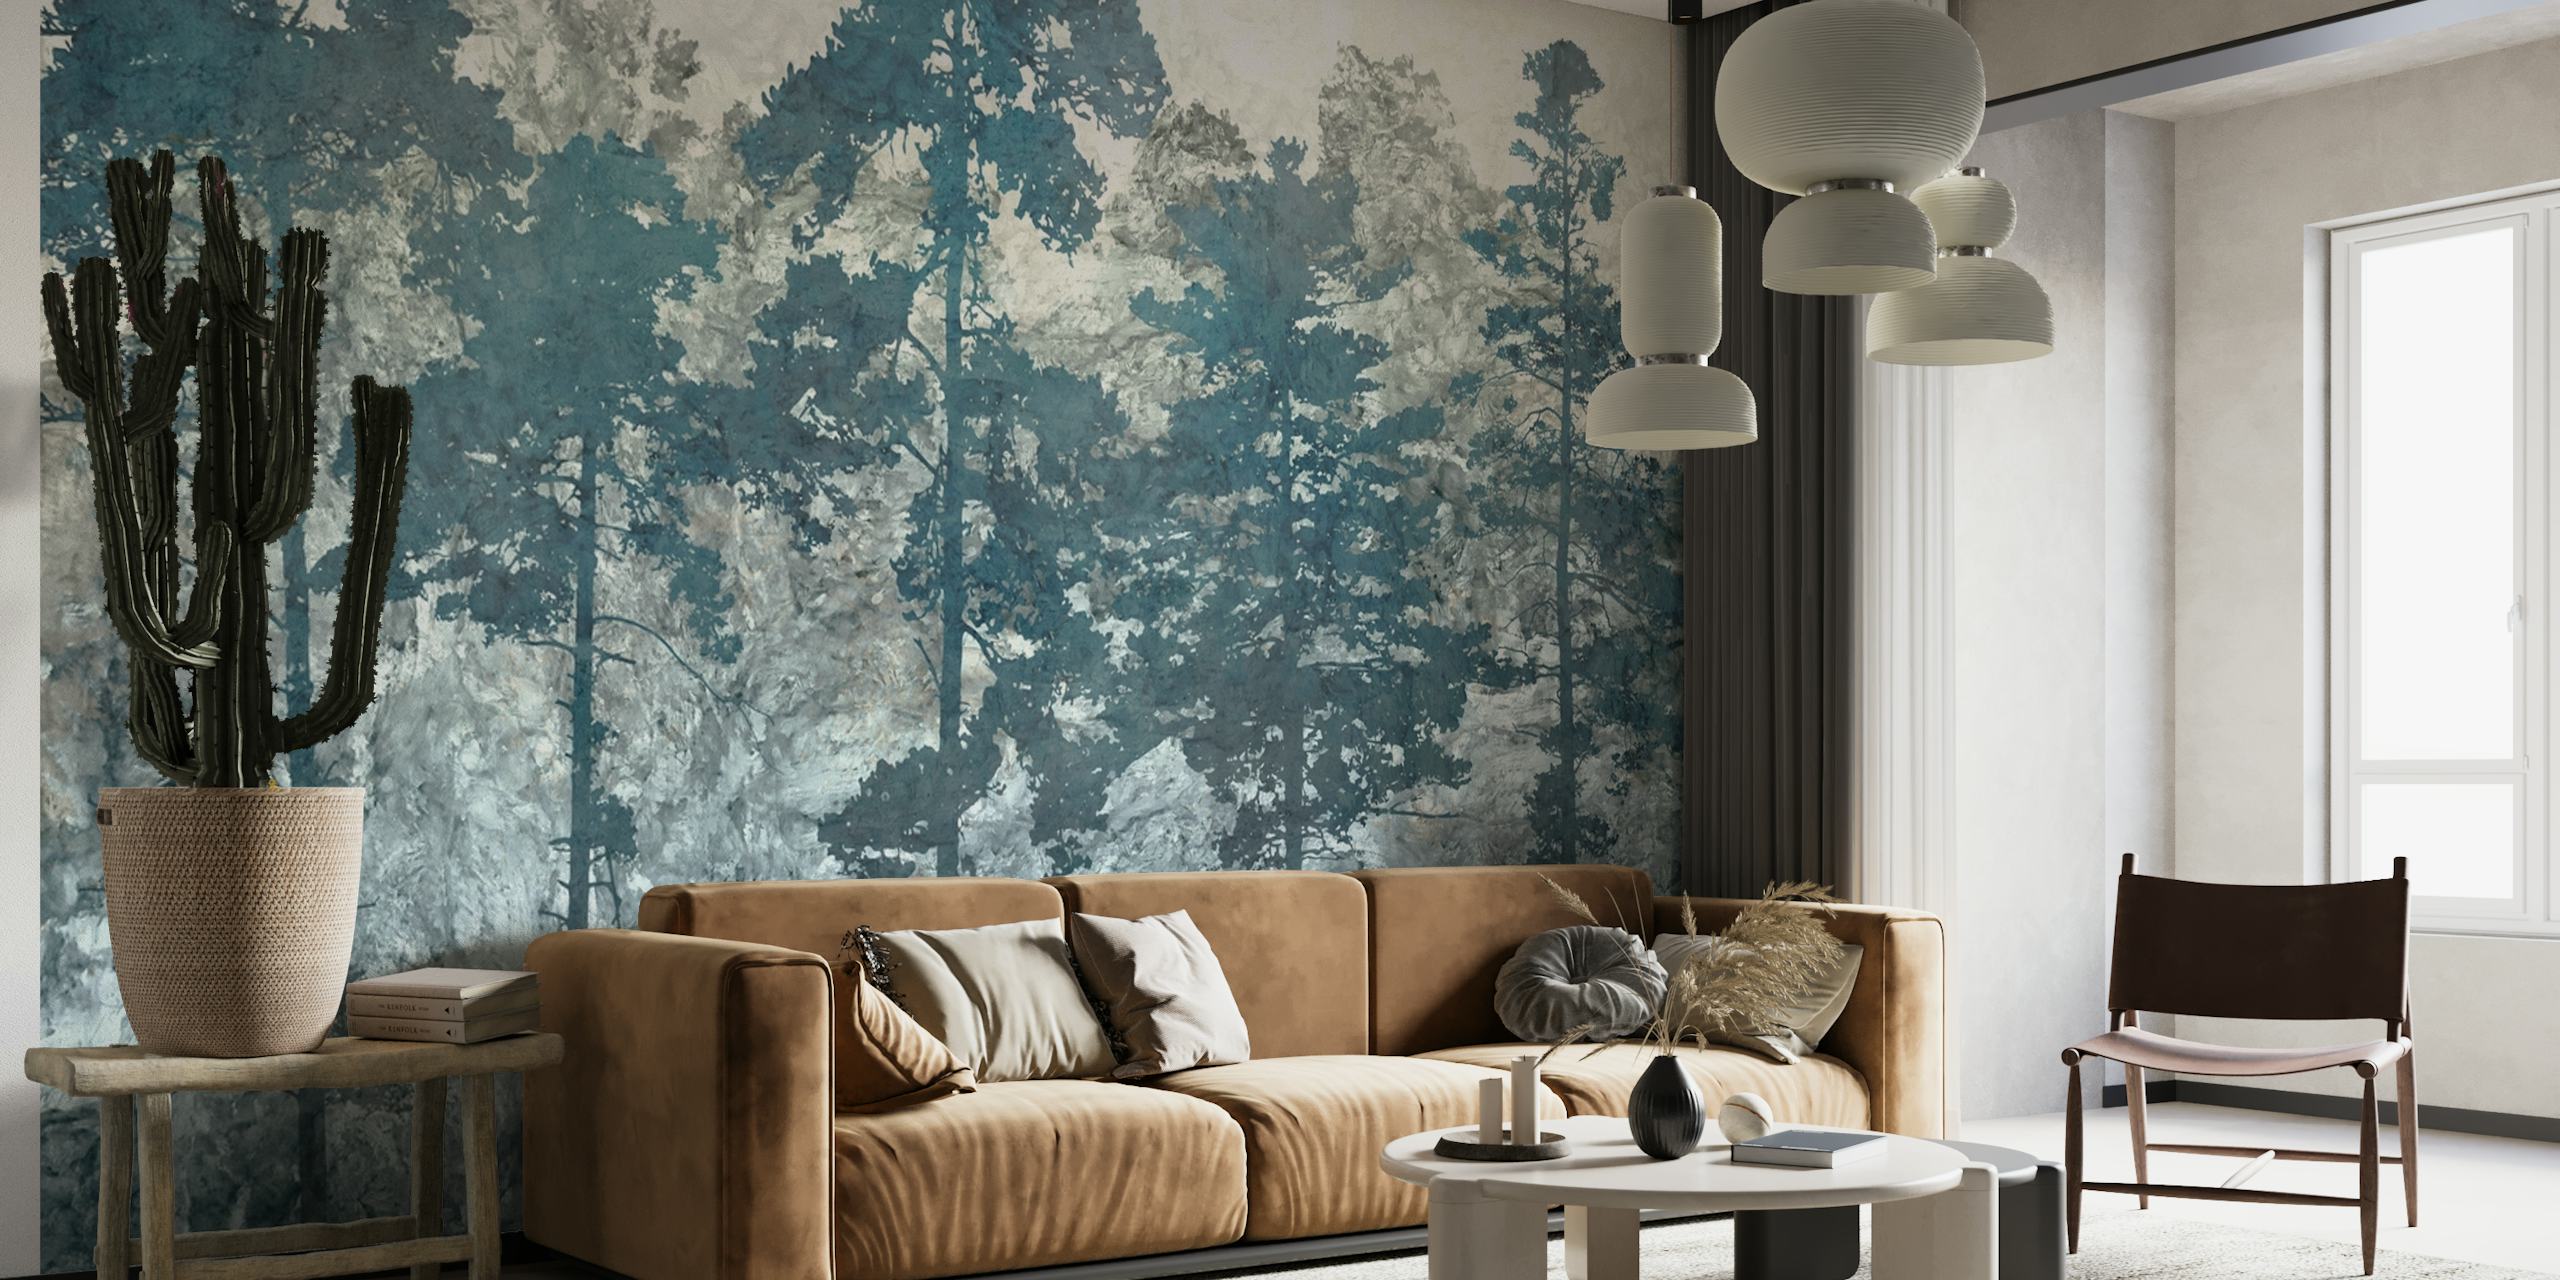 Umjetnički prikaz borove šume u apstraktnim plavim i bijelim bojama